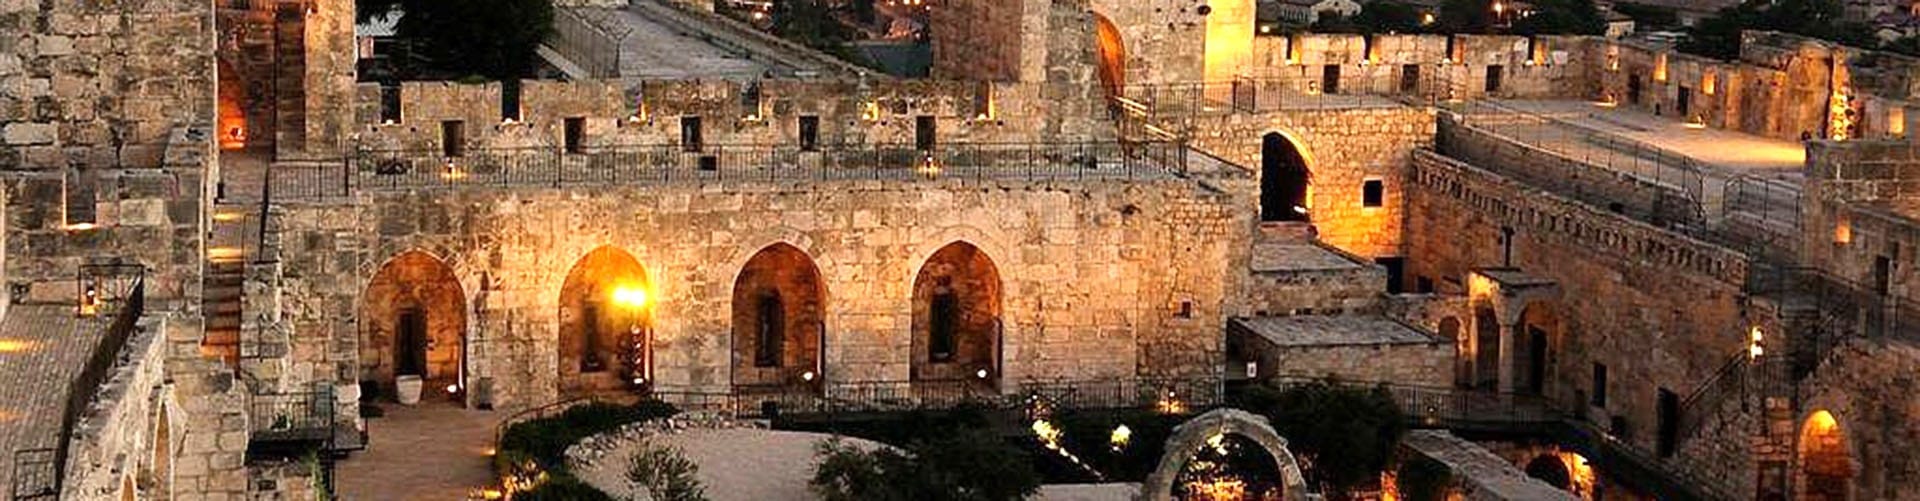 החזיון האור קולי במגדל דוד